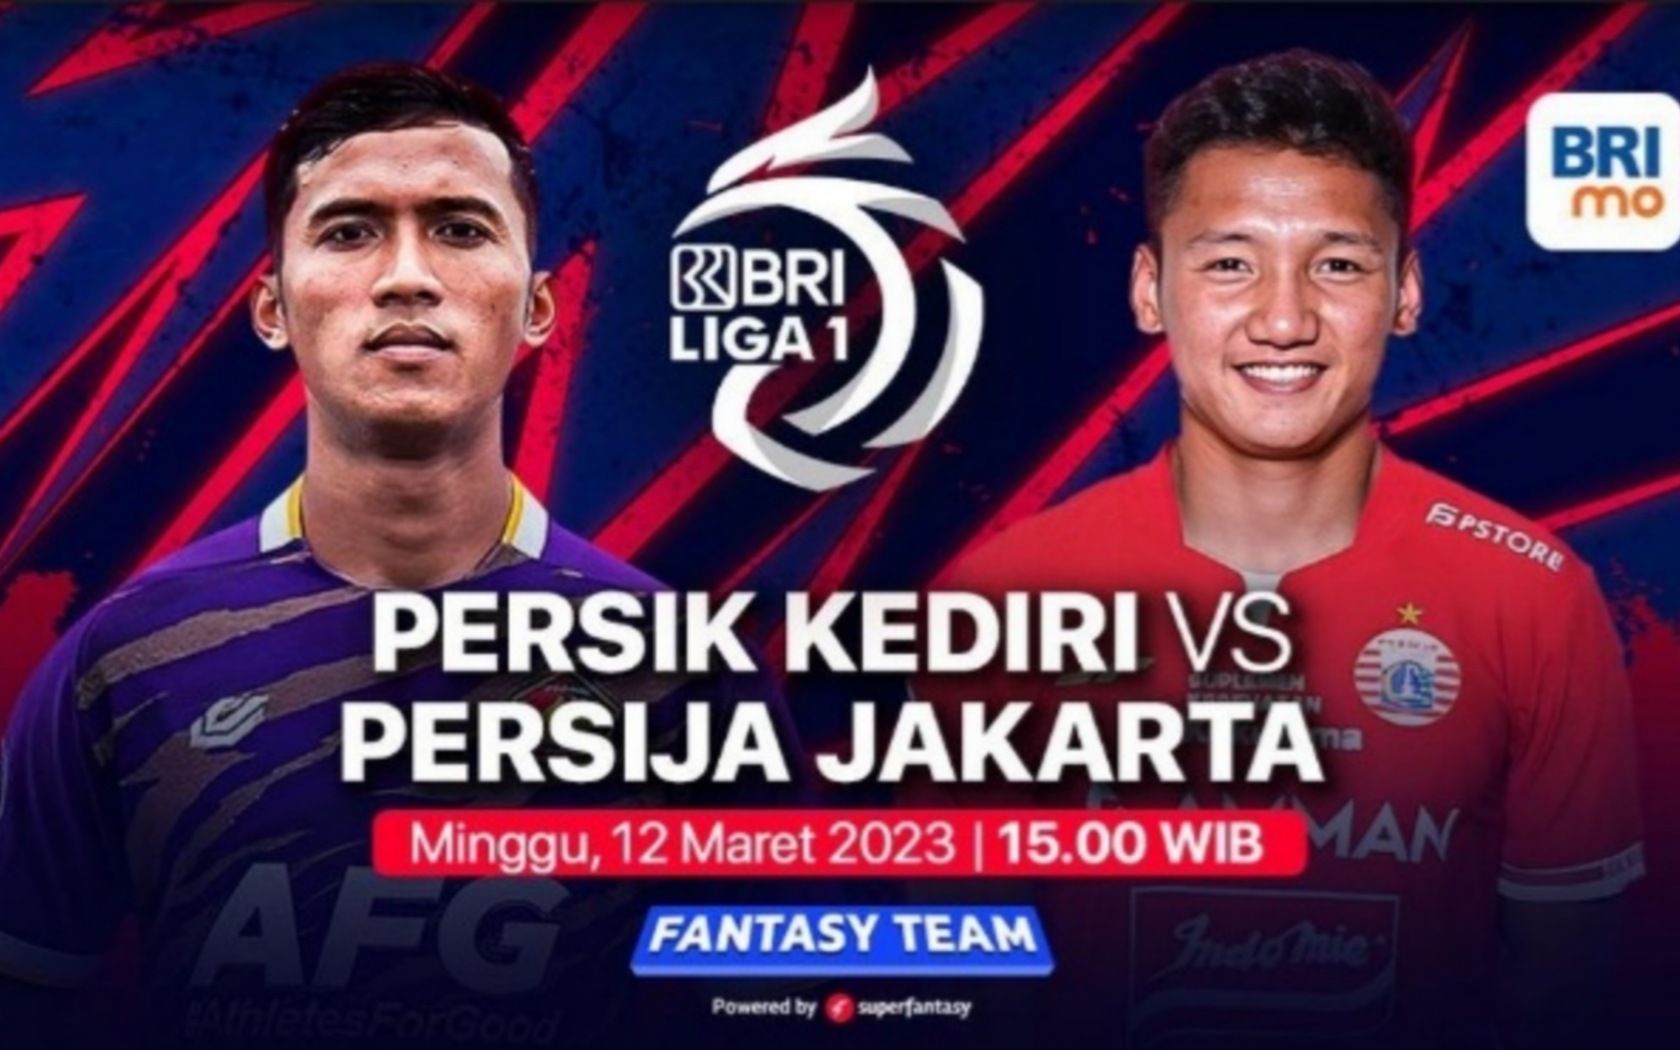 Prediksi formasi susunan pemain Persik kediri vs Persija Jakarta pertandingan BRI Liga 1 hari ini